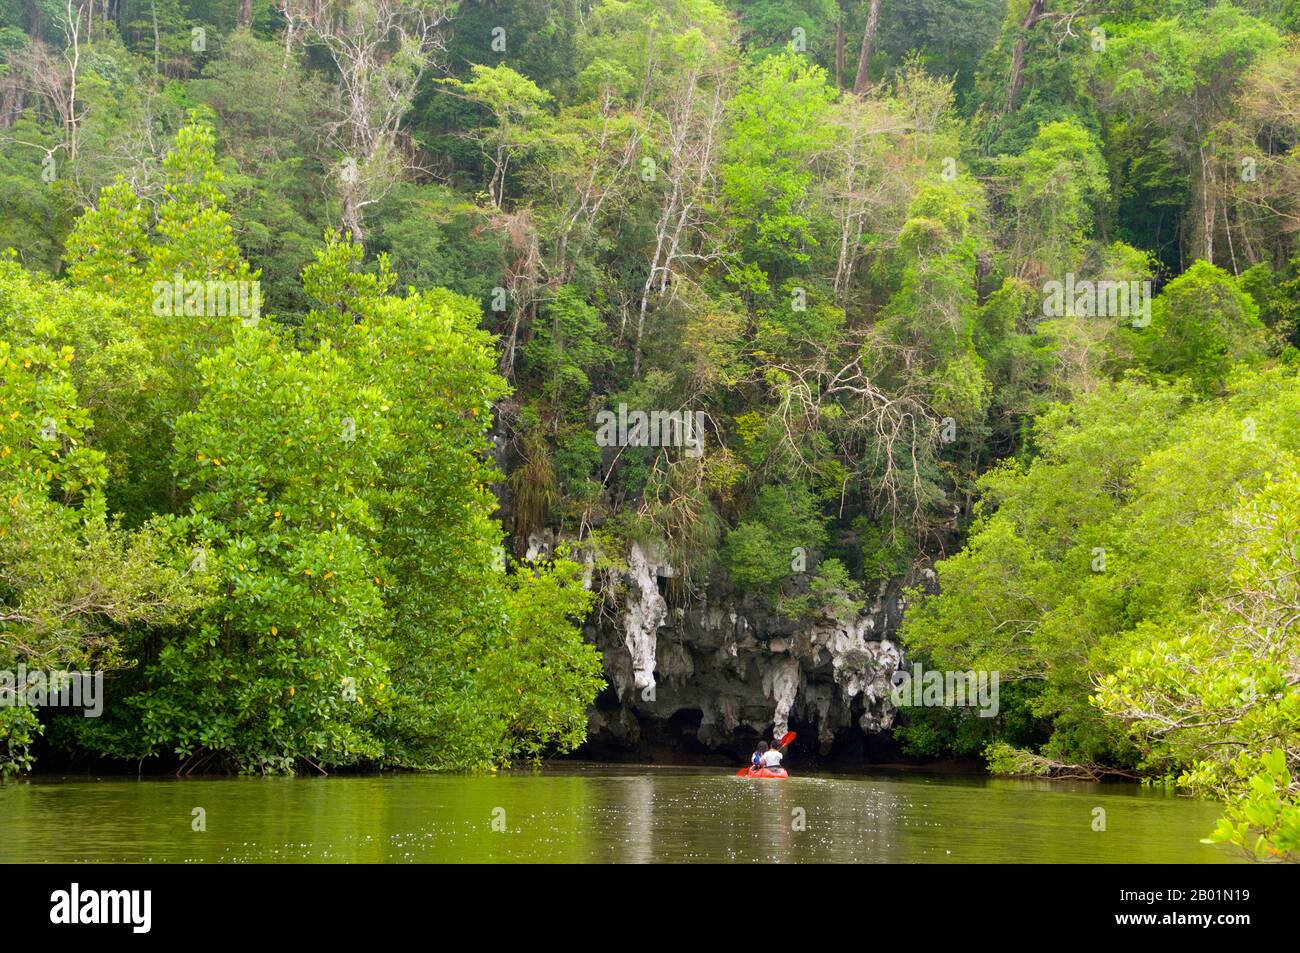 Thailandia: Kayak nel parco, poi nel Parco Nazionale di Bokkharani, provincia di Krabi. Il Parco Nazionale di Than Bokkharani si trova nella provincia di Krabi a circa 45 chilometri (28 miglia) a nord-ovest della città di Krabi. Il parco copre un'area di 121 chilometri quadrati (47 miglia quadrate) ed è caratterizzato da una serie di affioramenti calcarei, foreste pluviali sempreverdi, foreste di mangrovie, paludi torbiere e molte isole. Ci sono anche numerose grotte e complessi rupestri con alcune spettacolari stalagmiti e stalattiti. Il Bokkharani è incentrato su due famose grotte, Tham Lot e Tham Phi Hua. Foto Stock